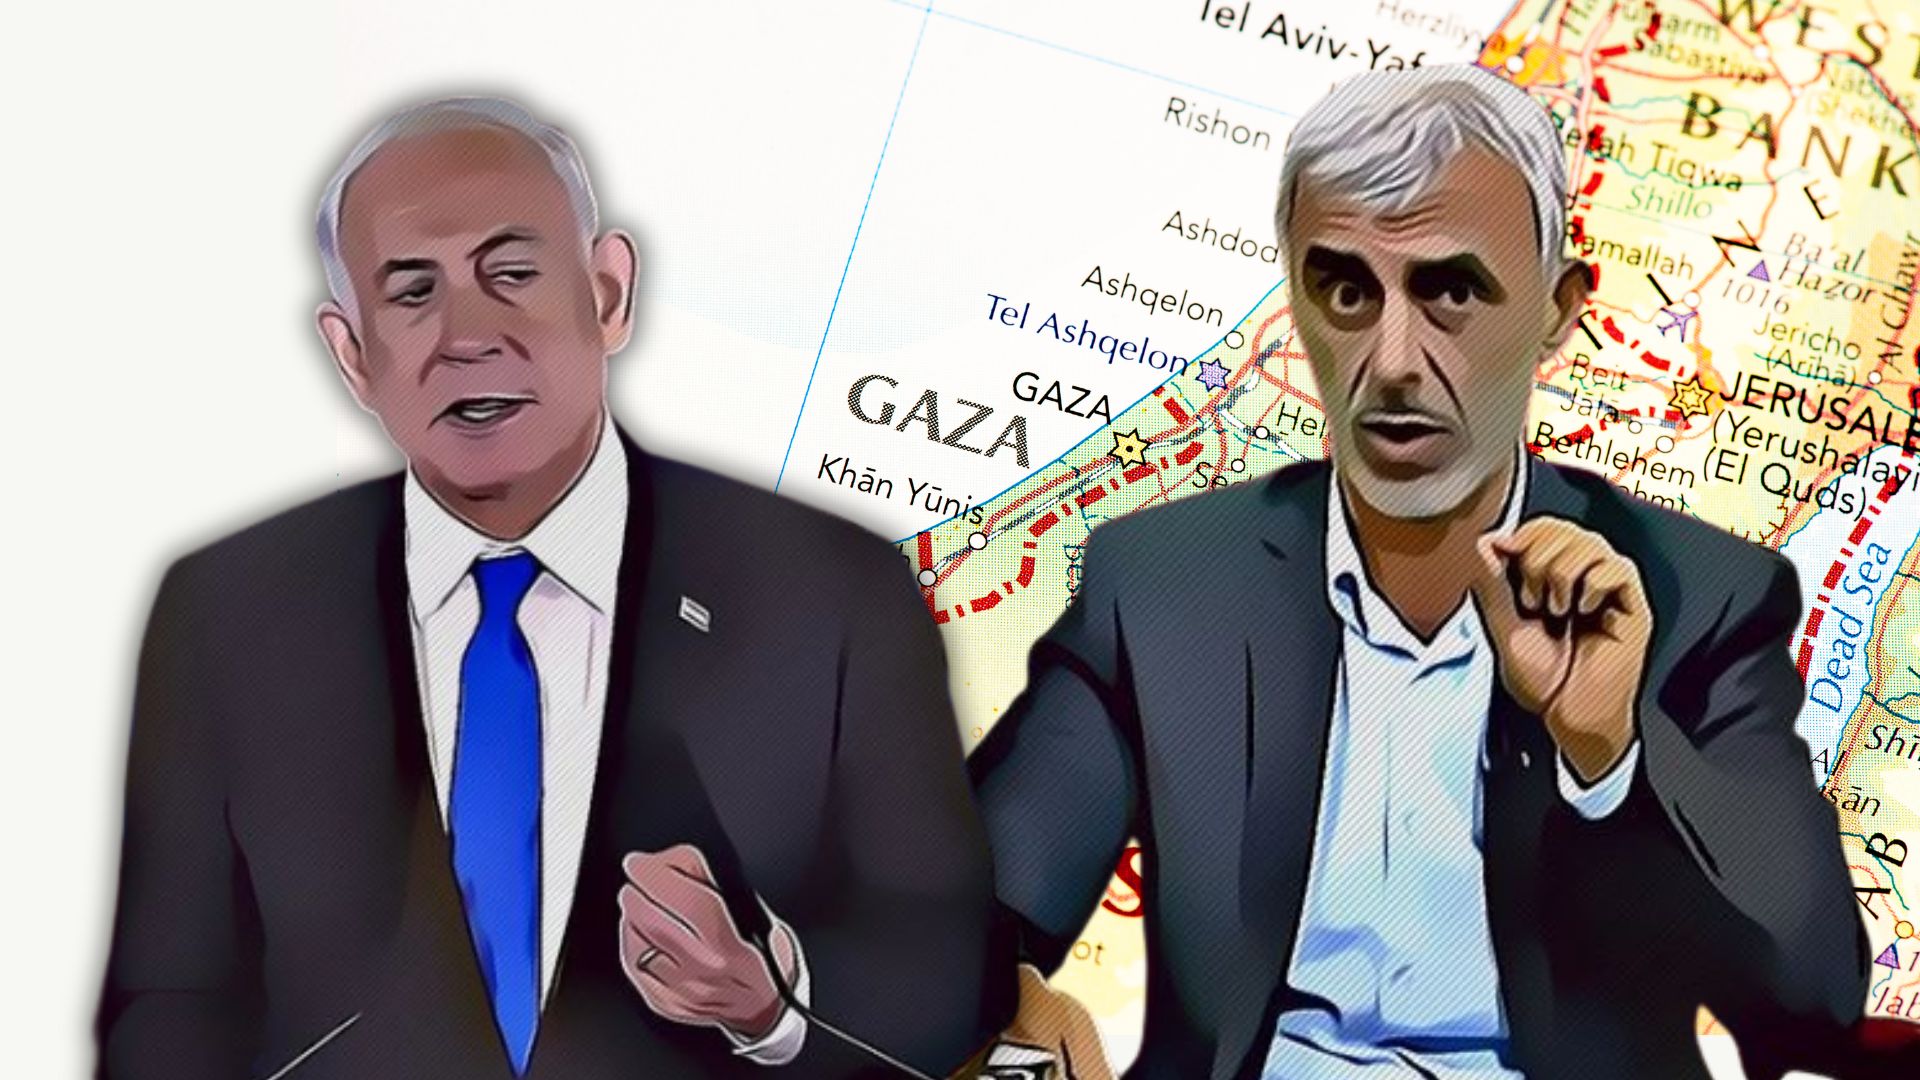 Hamas Israele, negoziati flop: cosa può succedere a Gaza